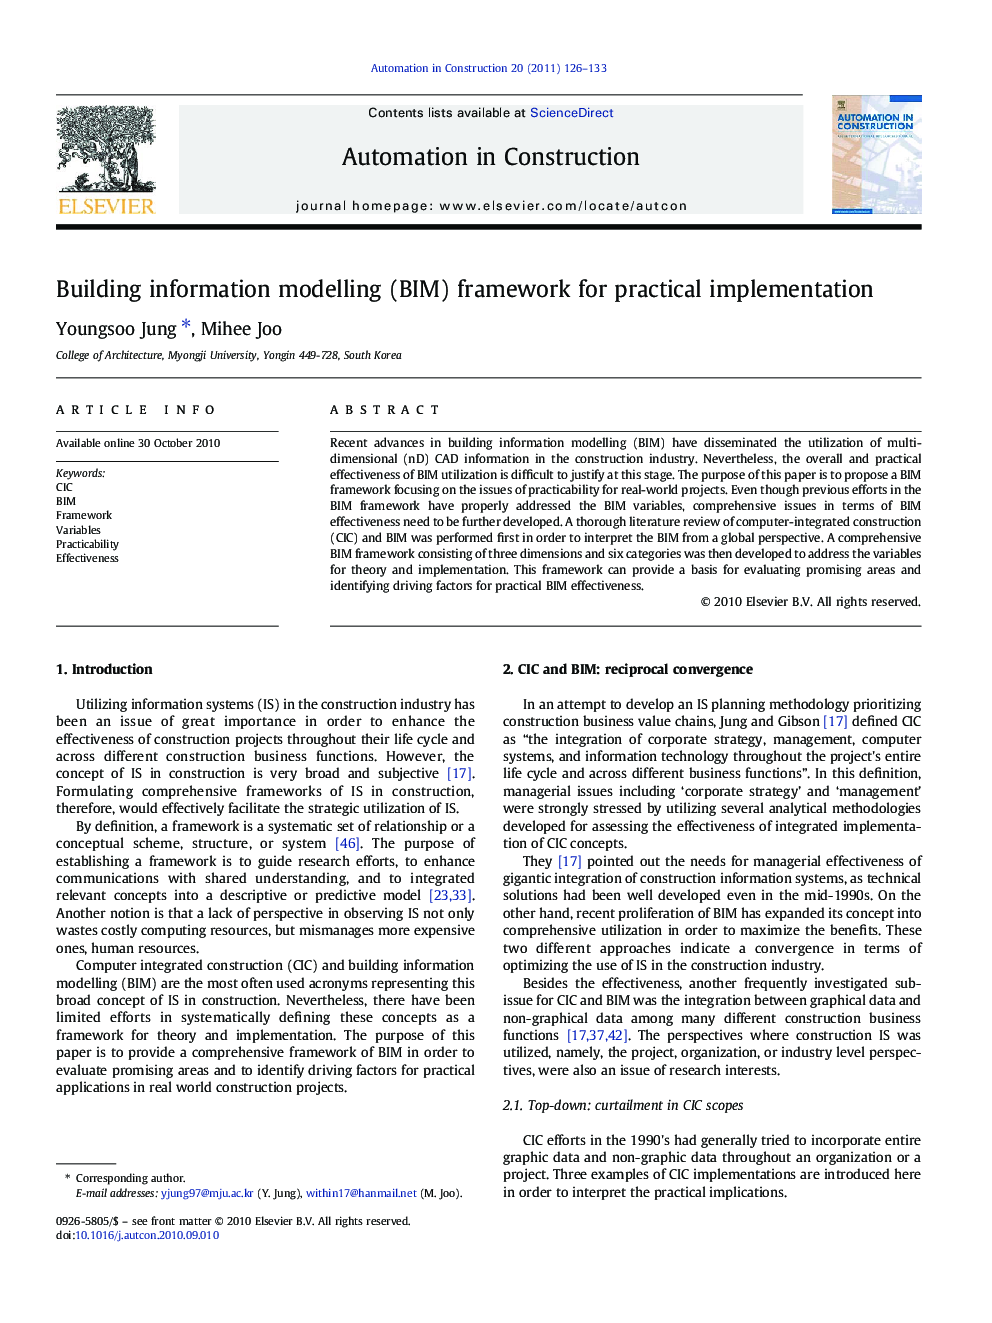 Building information modelling (BIM) framework for practical implementation